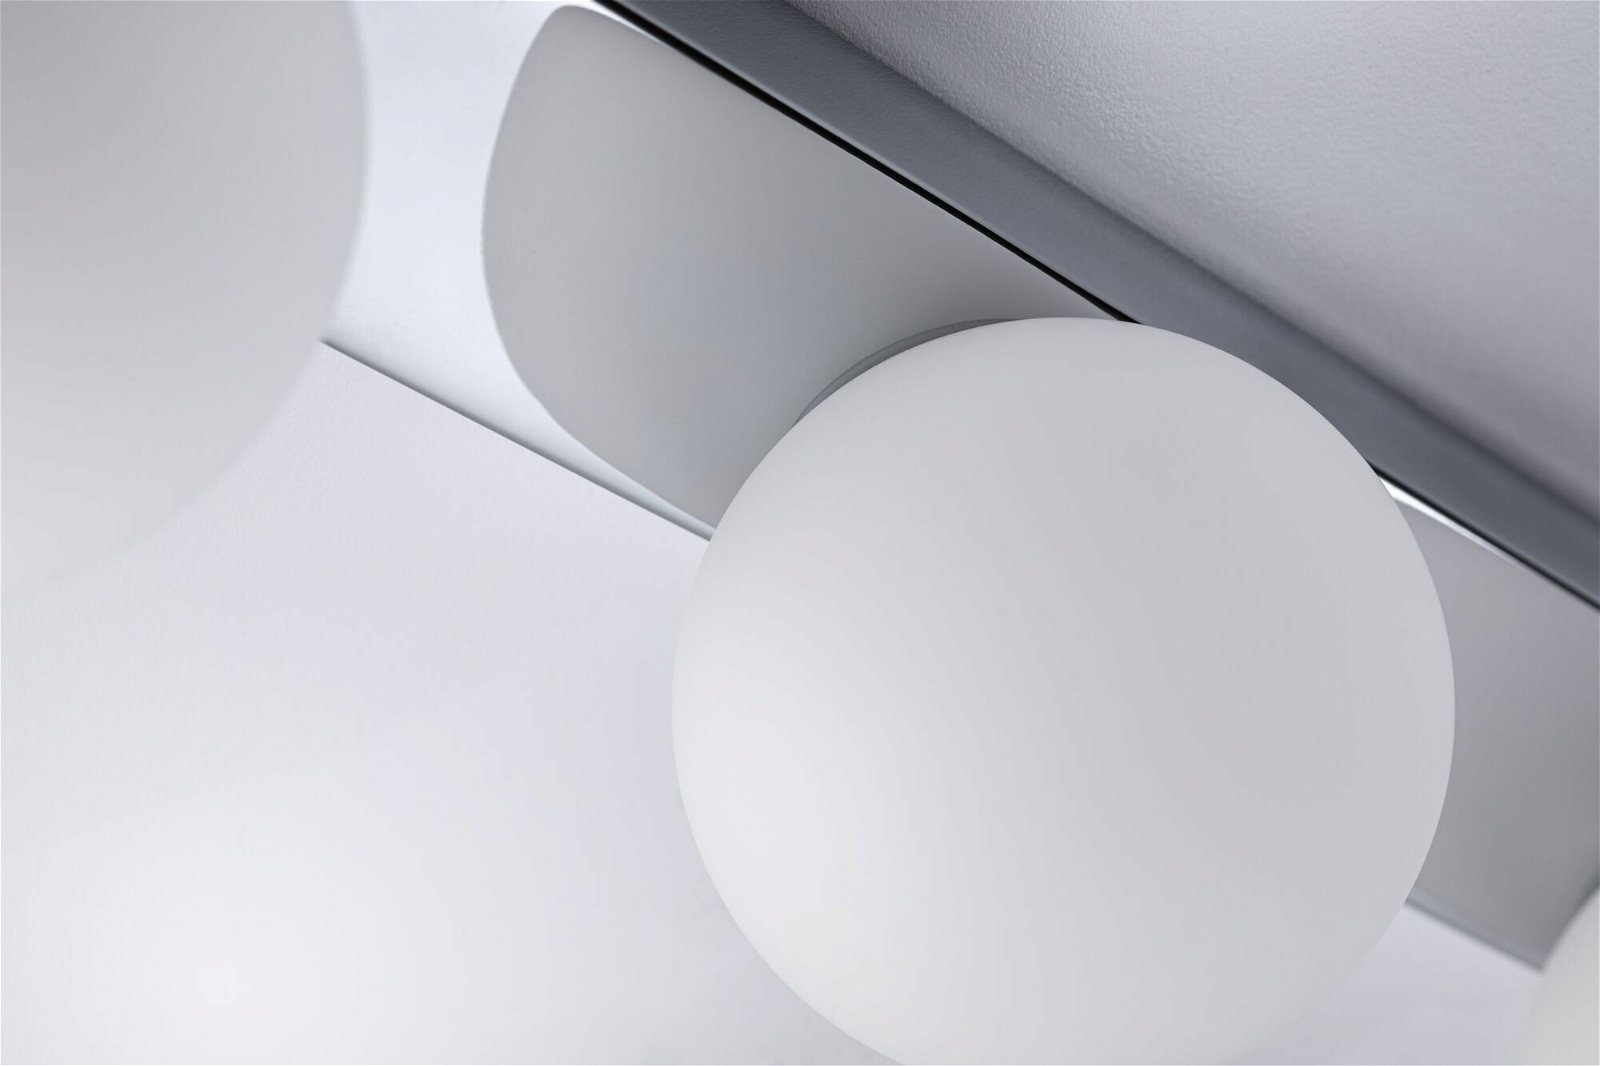 Gove Satin/Chrom IP44 Bathroom Balken G9 Leuchtmittel, ohne Selection max. Glas/Metall, 3x20W Deckenleuchte Paulmann